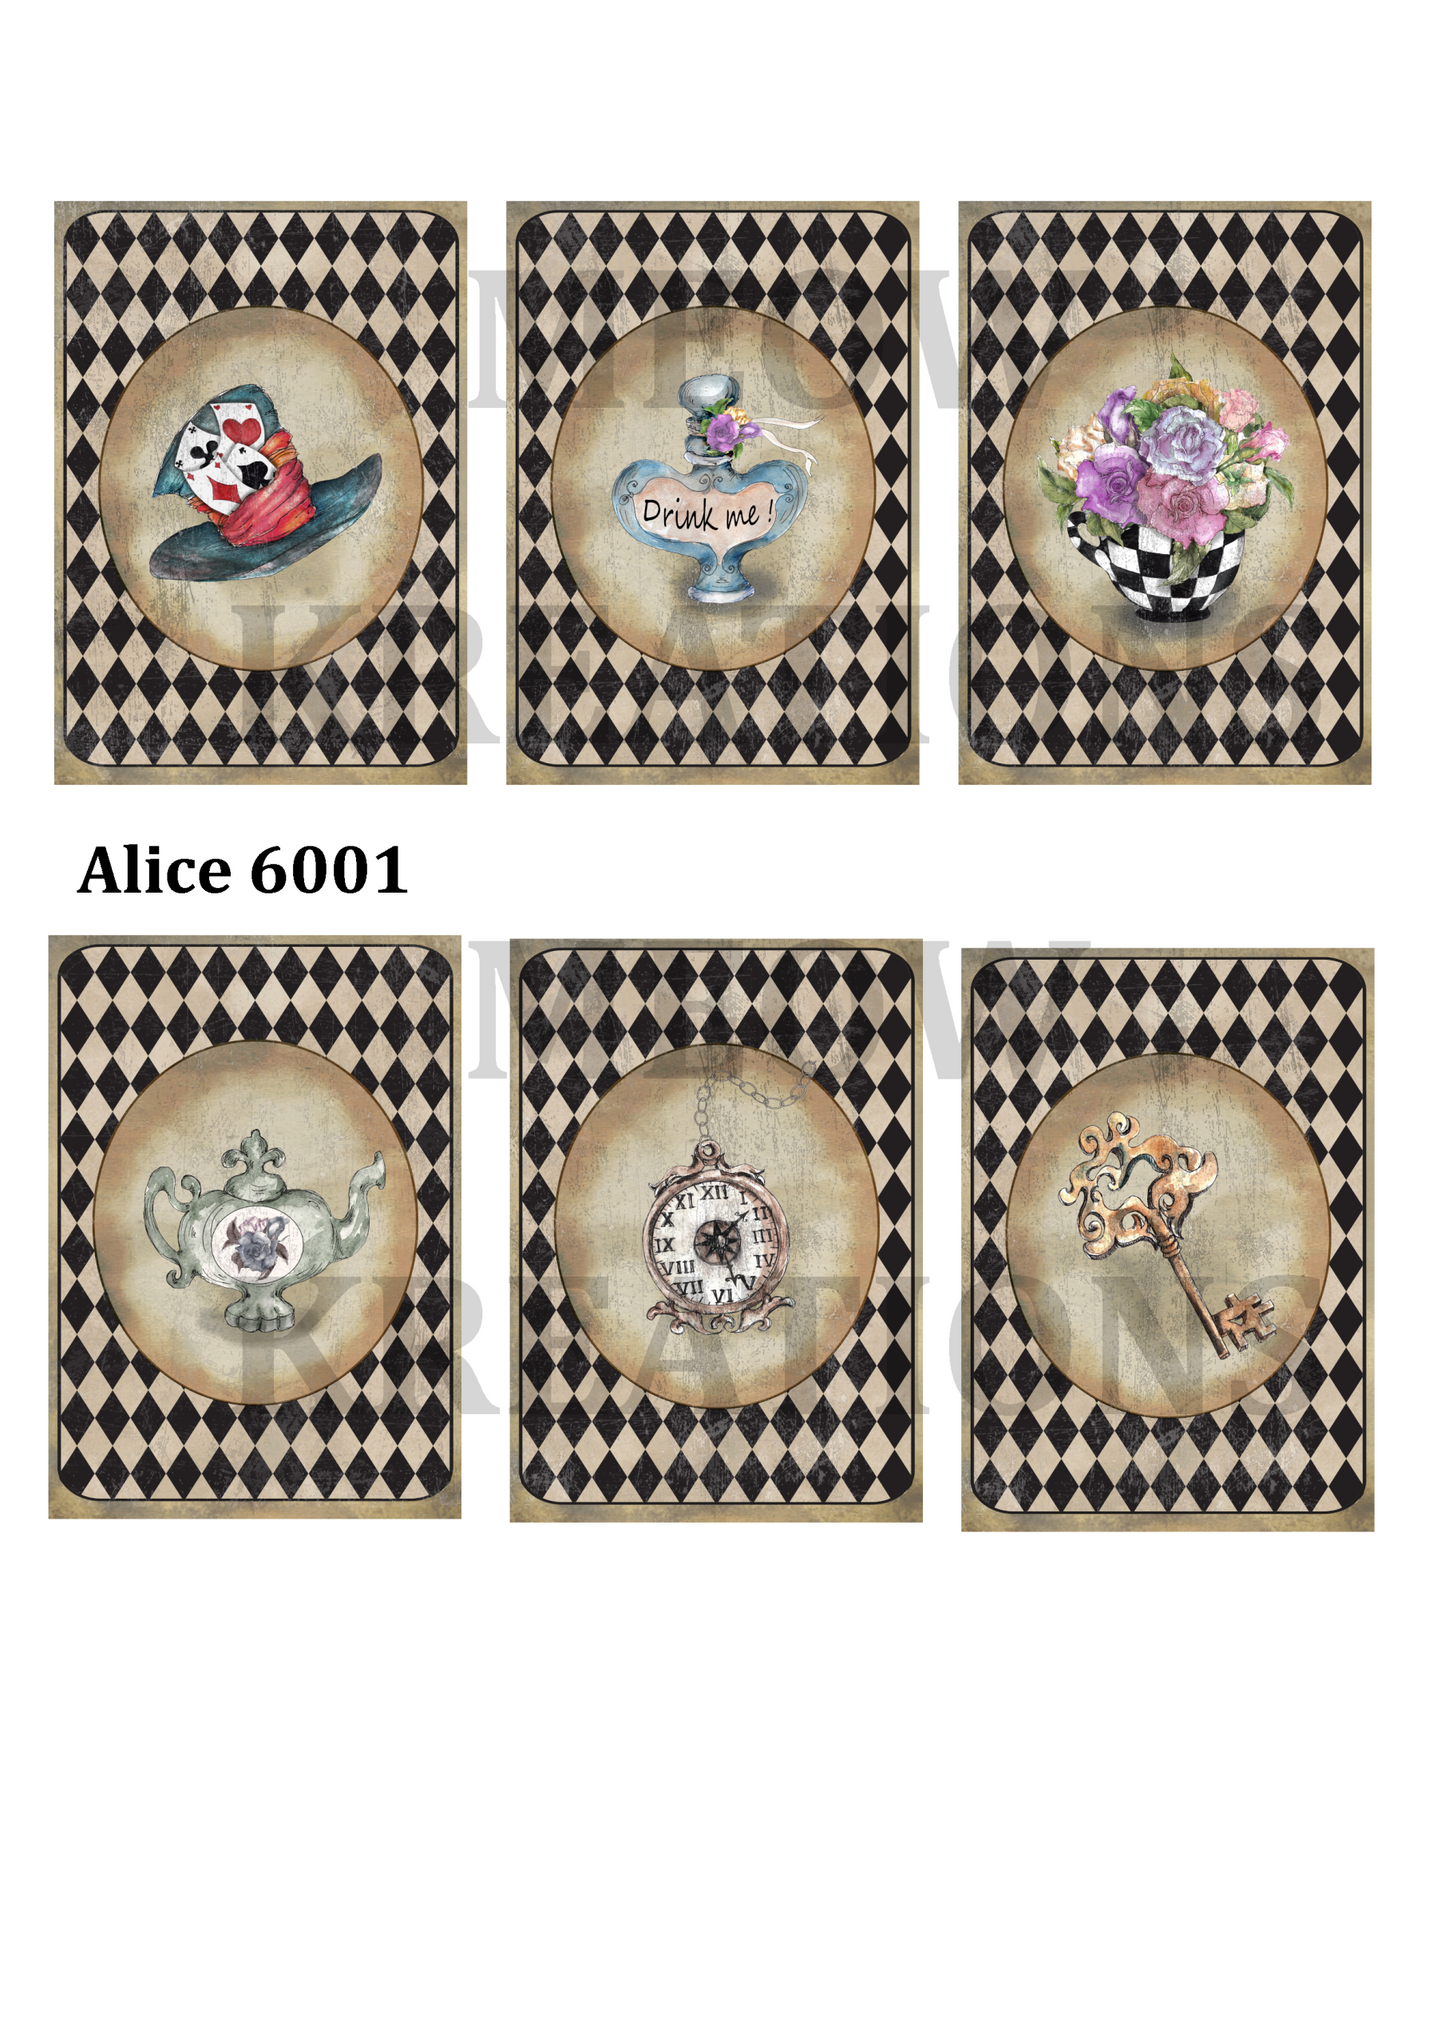 Alice 6001